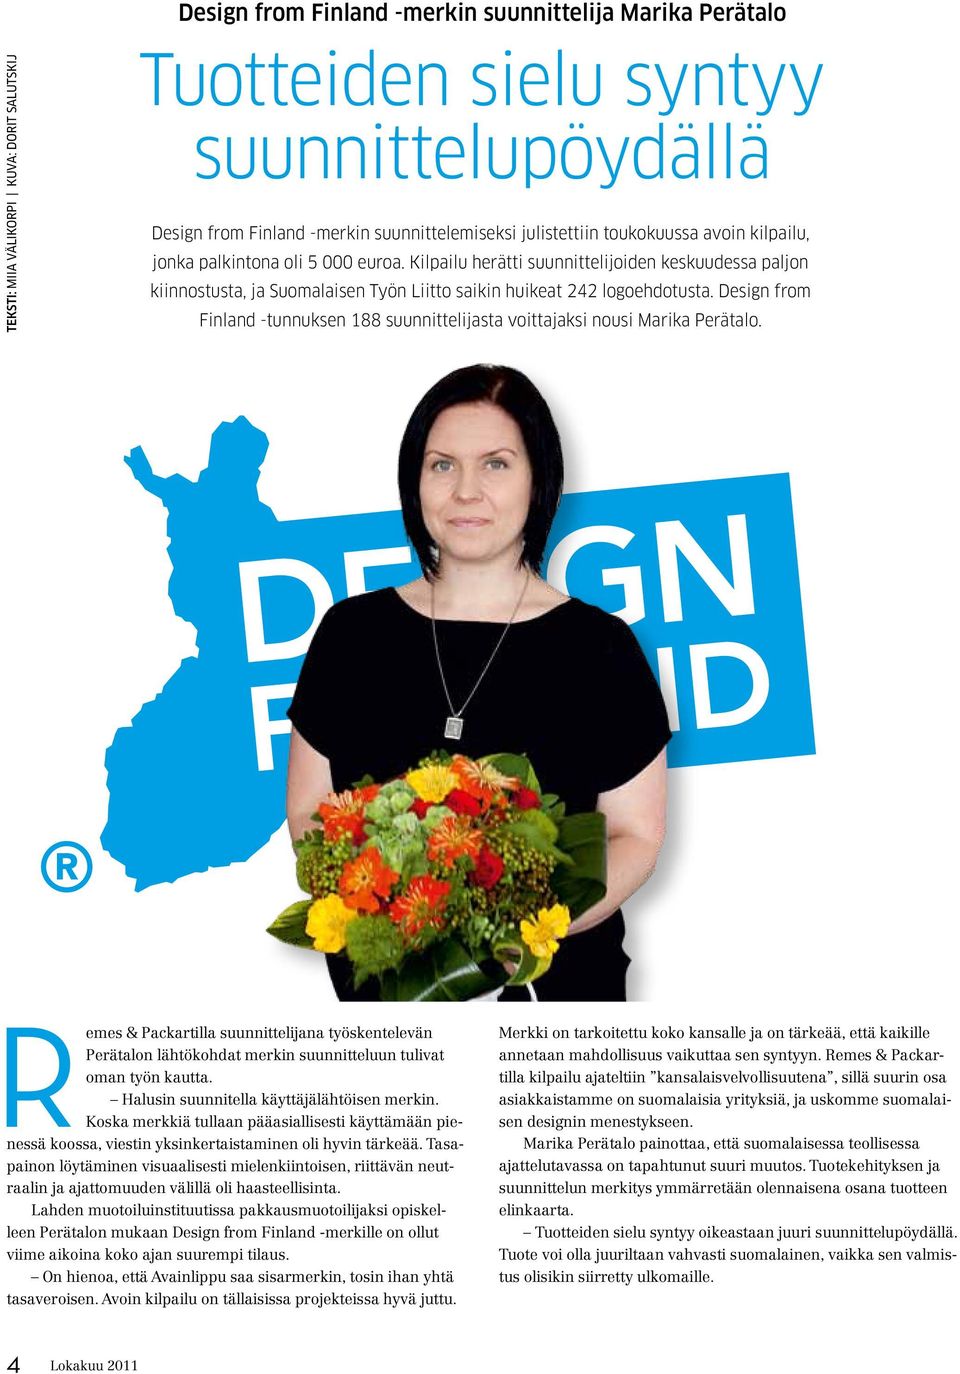 Kilpailu herätti suunnittelijoiden keskuudessa paljon kiinnostusta, ja Suomalaisen Työn Liitto saikin huikeat 242 logoehdotusta.